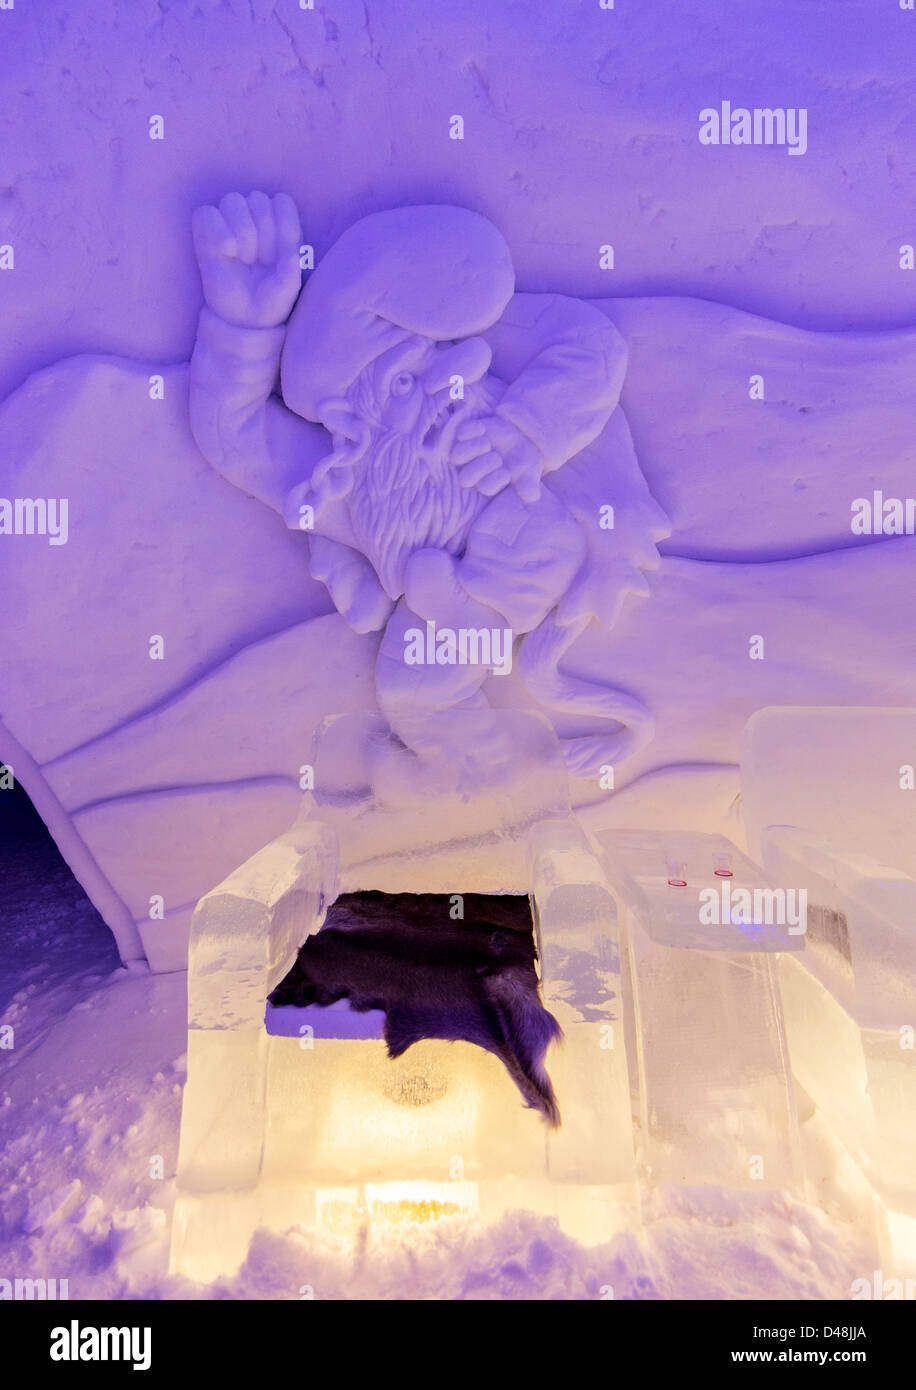 Interno del Kirkenes Snowhotel, Norvegia, mostra di mobili realizzati da sculture di neve e ghiaccio sulla parete Foto Stock